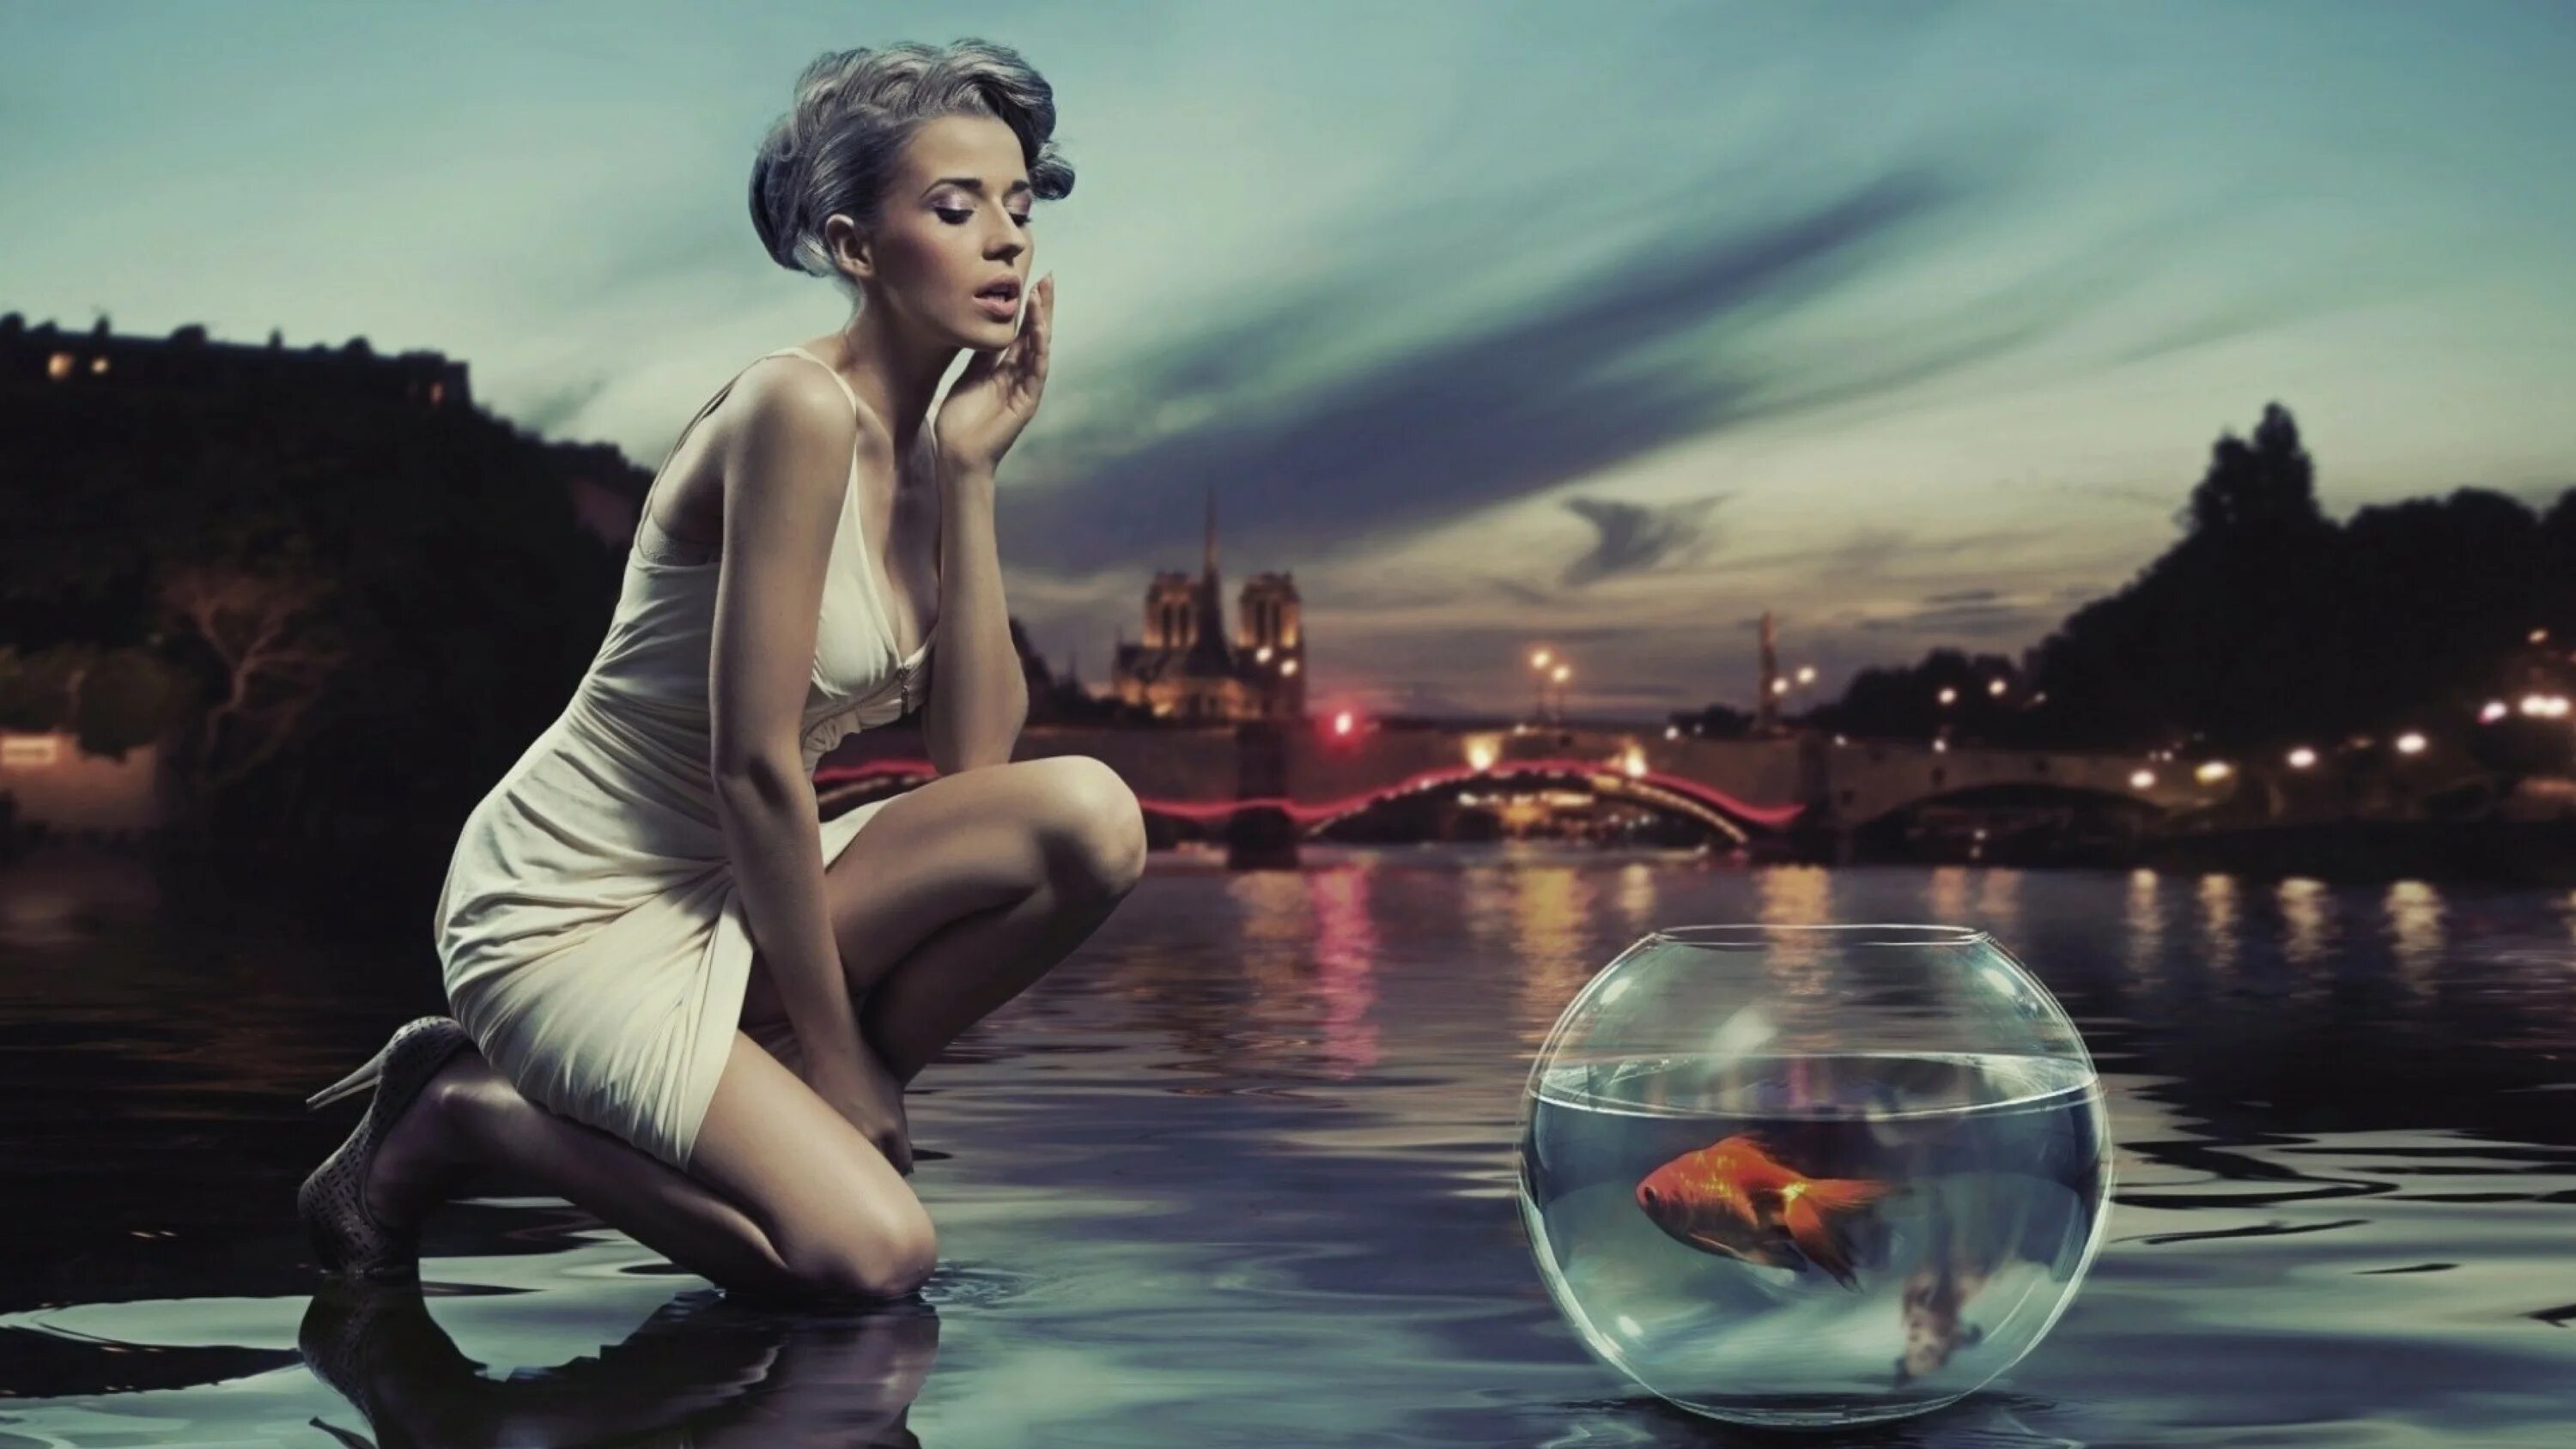 Девушка и Золотая рыбка. Золотая рыбка женщина. Фотосессия с аквариумом. Желание женщины. Песня в отражении воды